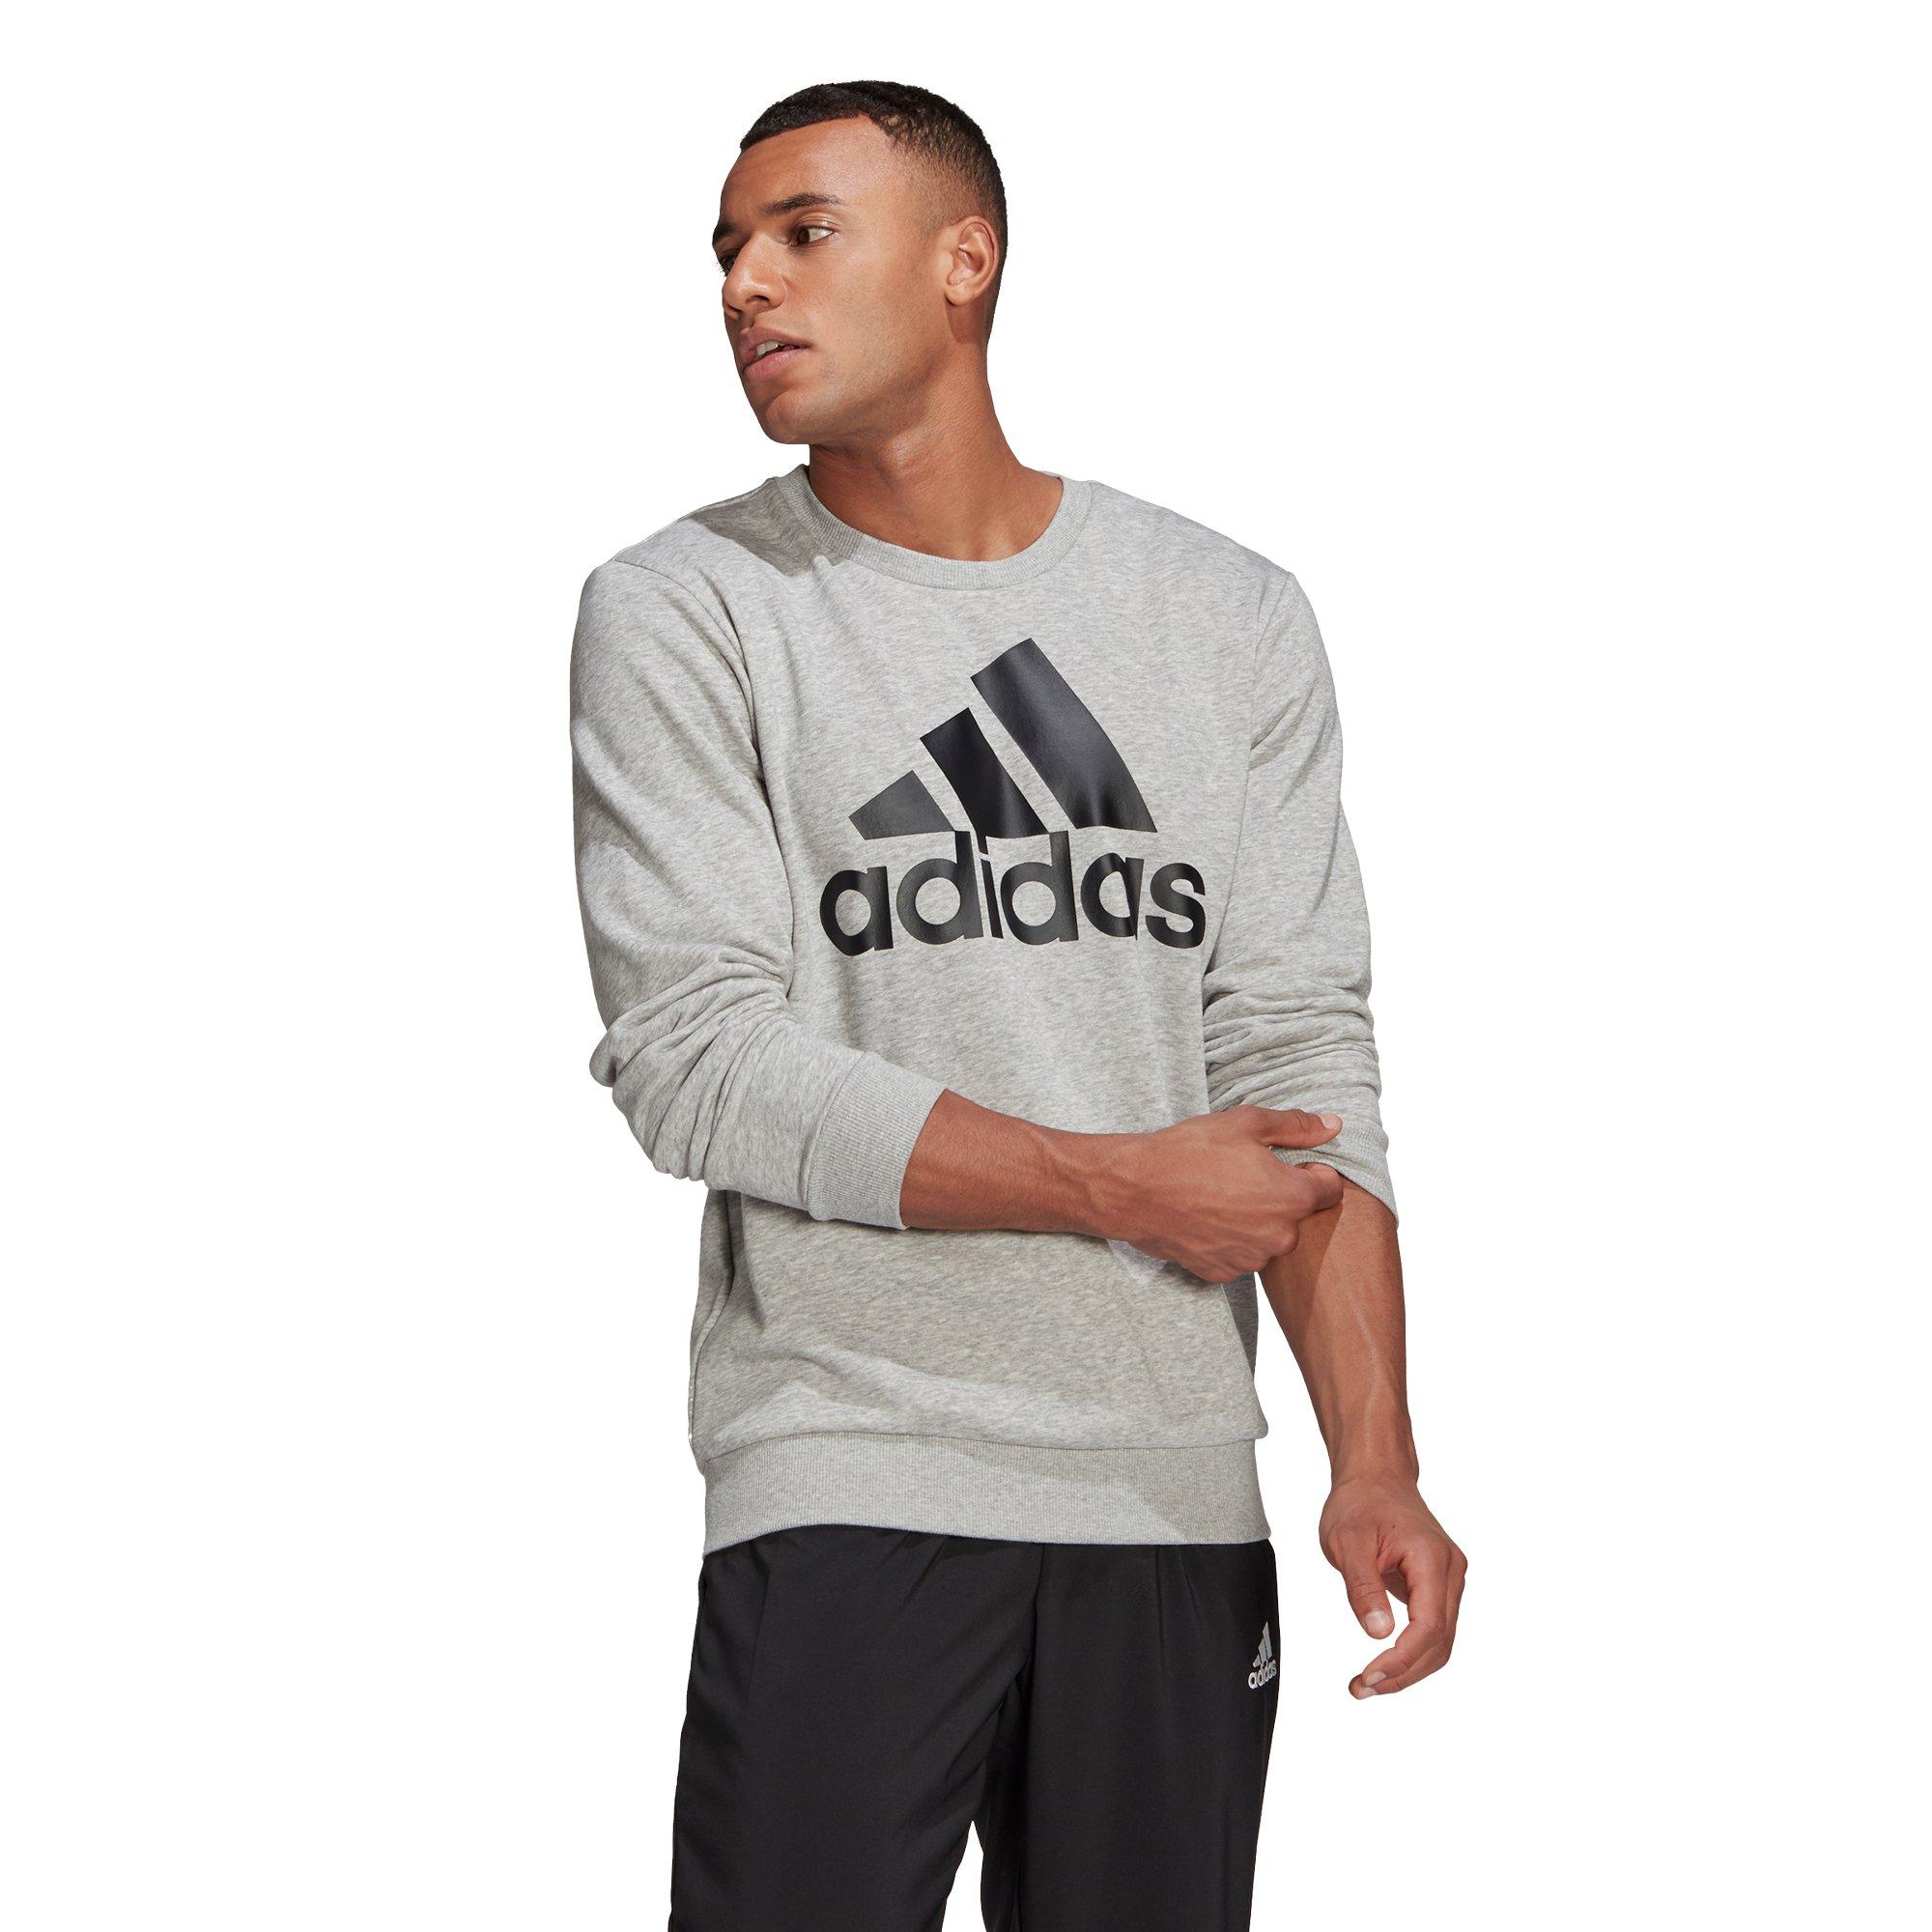 adidas Essentials Big Logo Sweatshirt - Grey